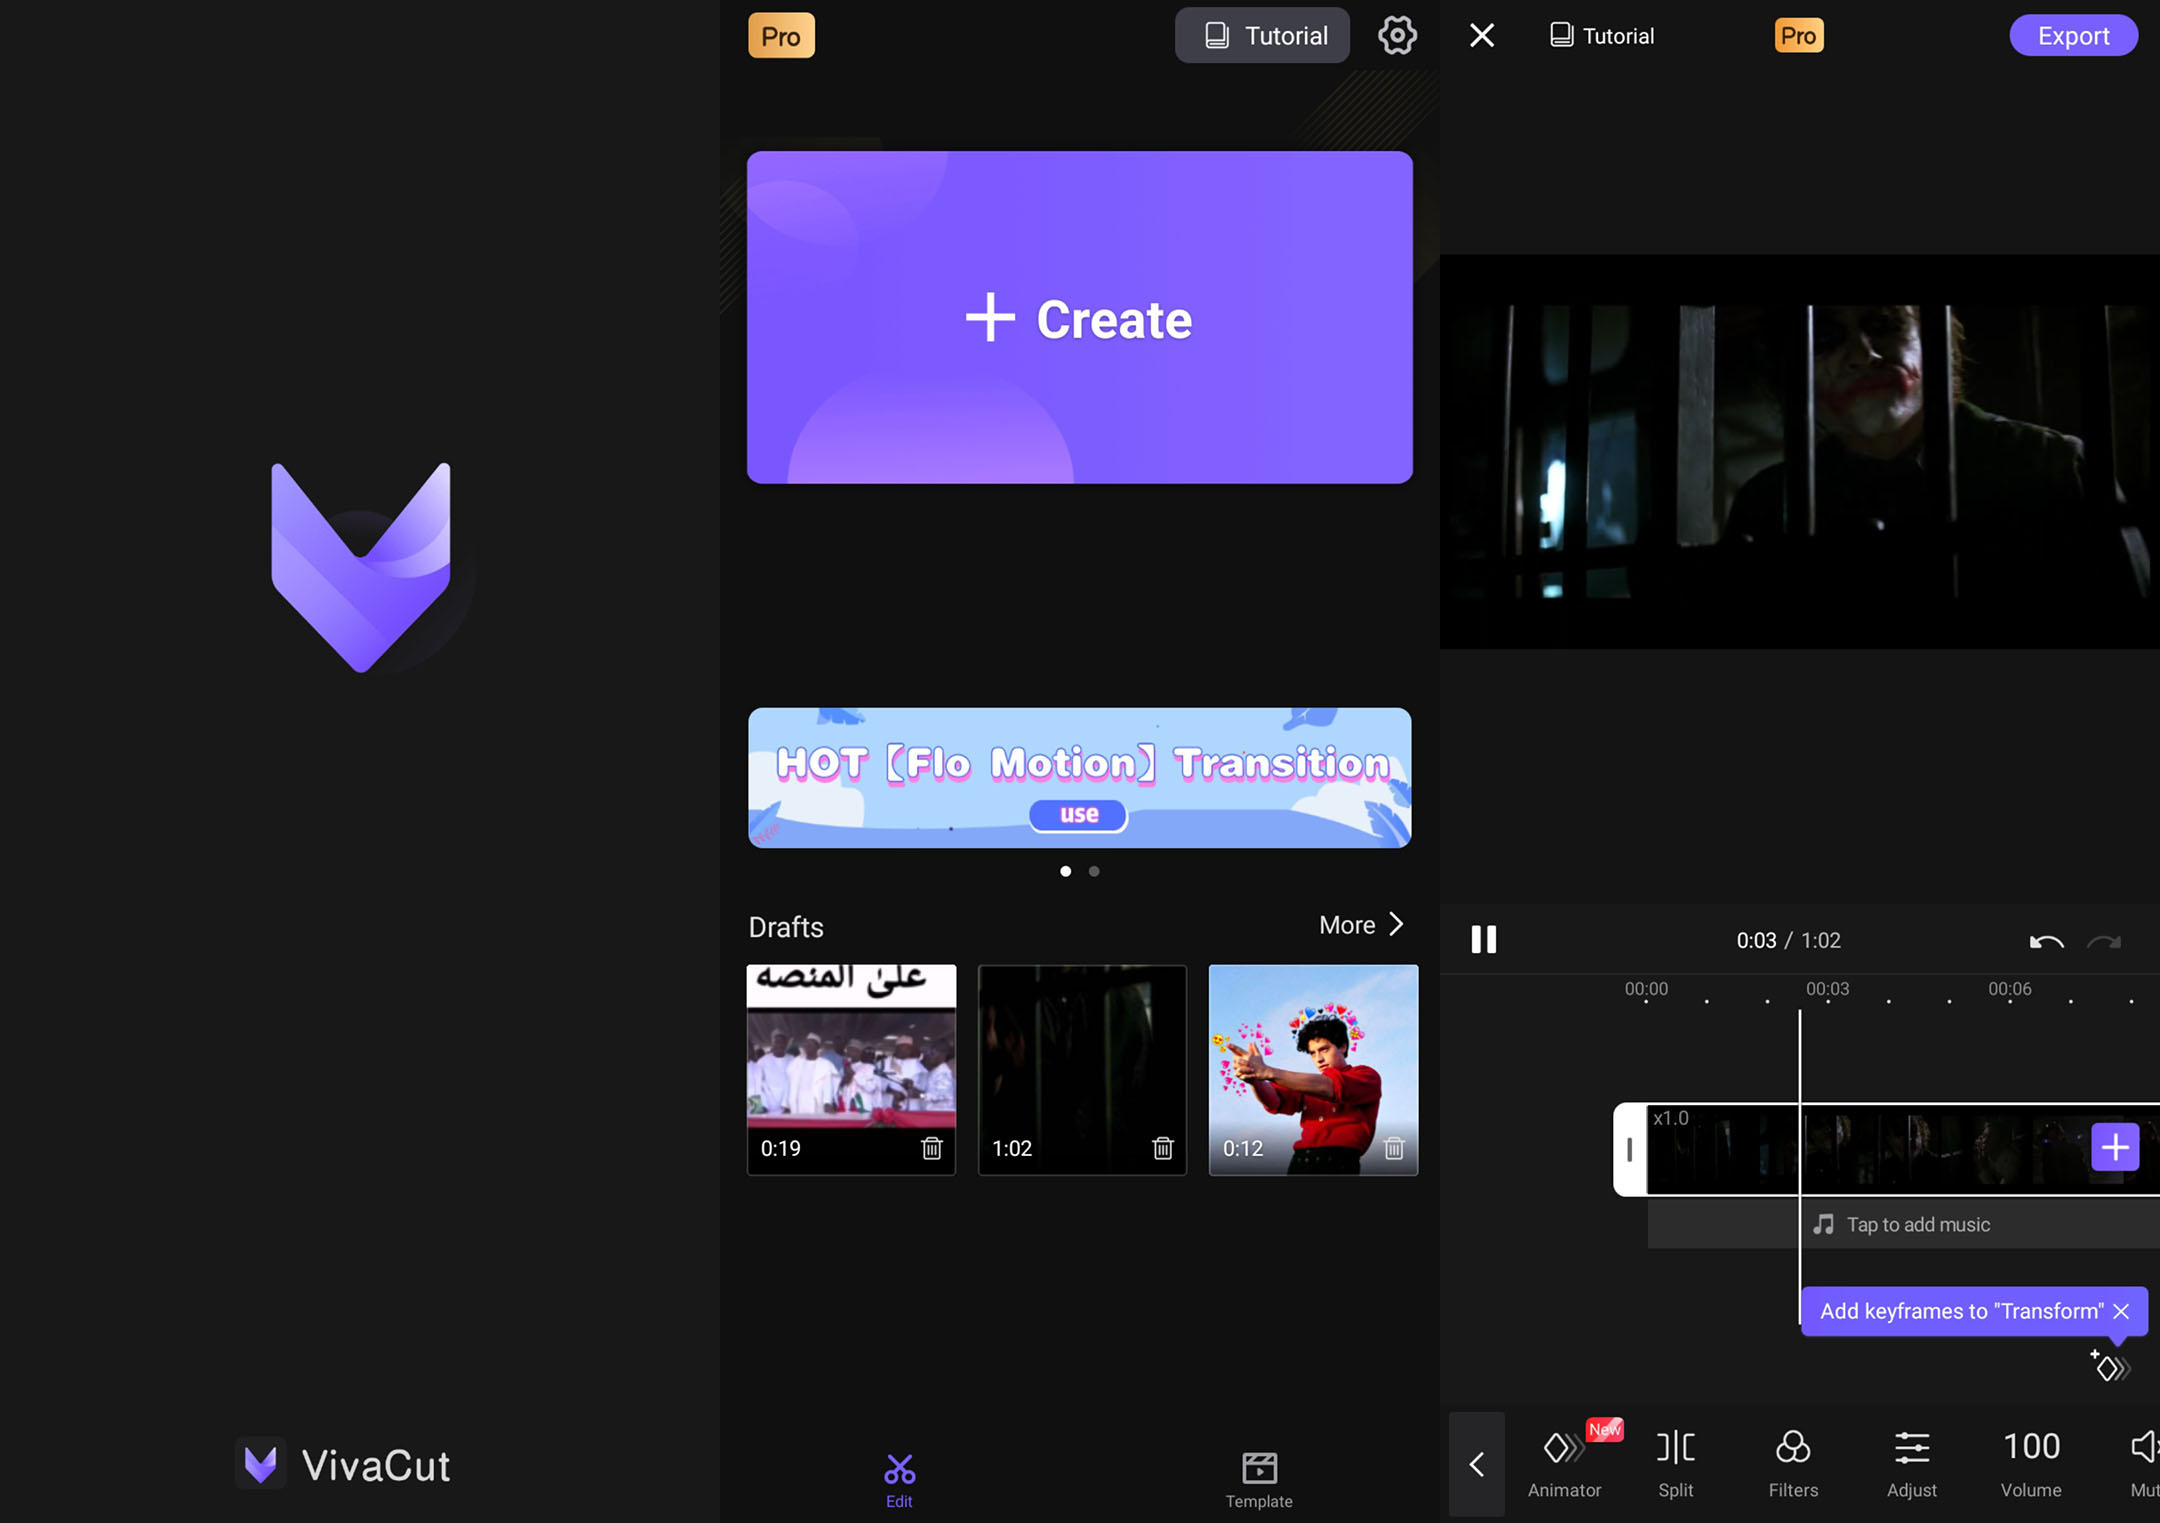 vivacut pro video editor app android 0a1d13 - VivaCut Pro Mod Apk V2.13.5 All Filters Fully unlocked